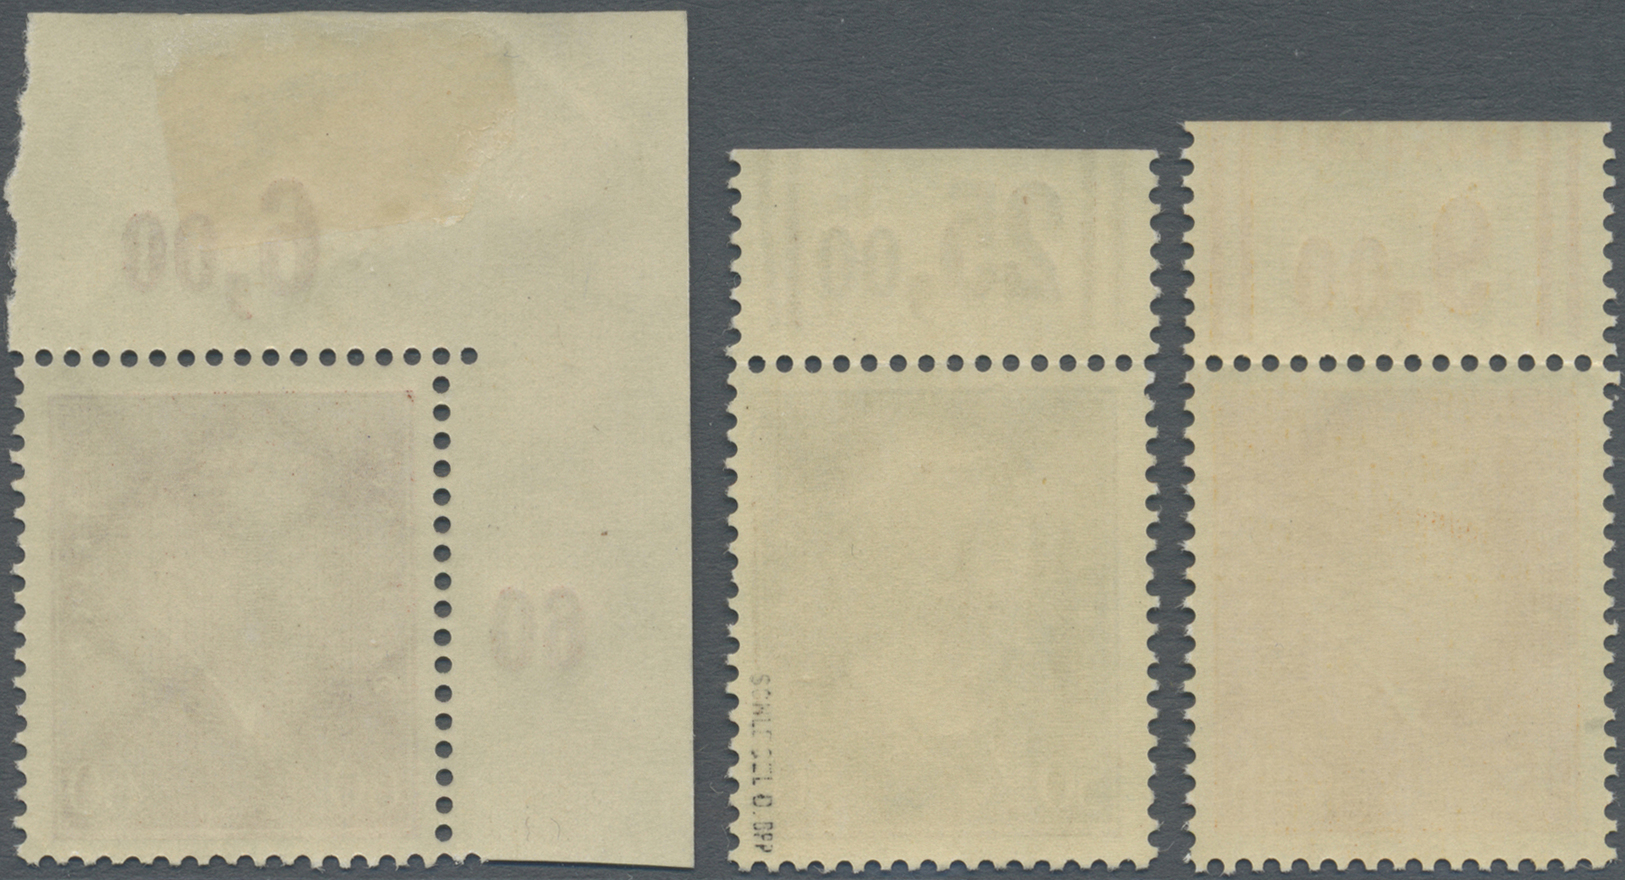 ** Deutsches Reich - Inflation: 1928, 45, 50 Und 60 Pfg. Reichspräsidenten Als Postfrische Marken Vom O - Lettres & Documents